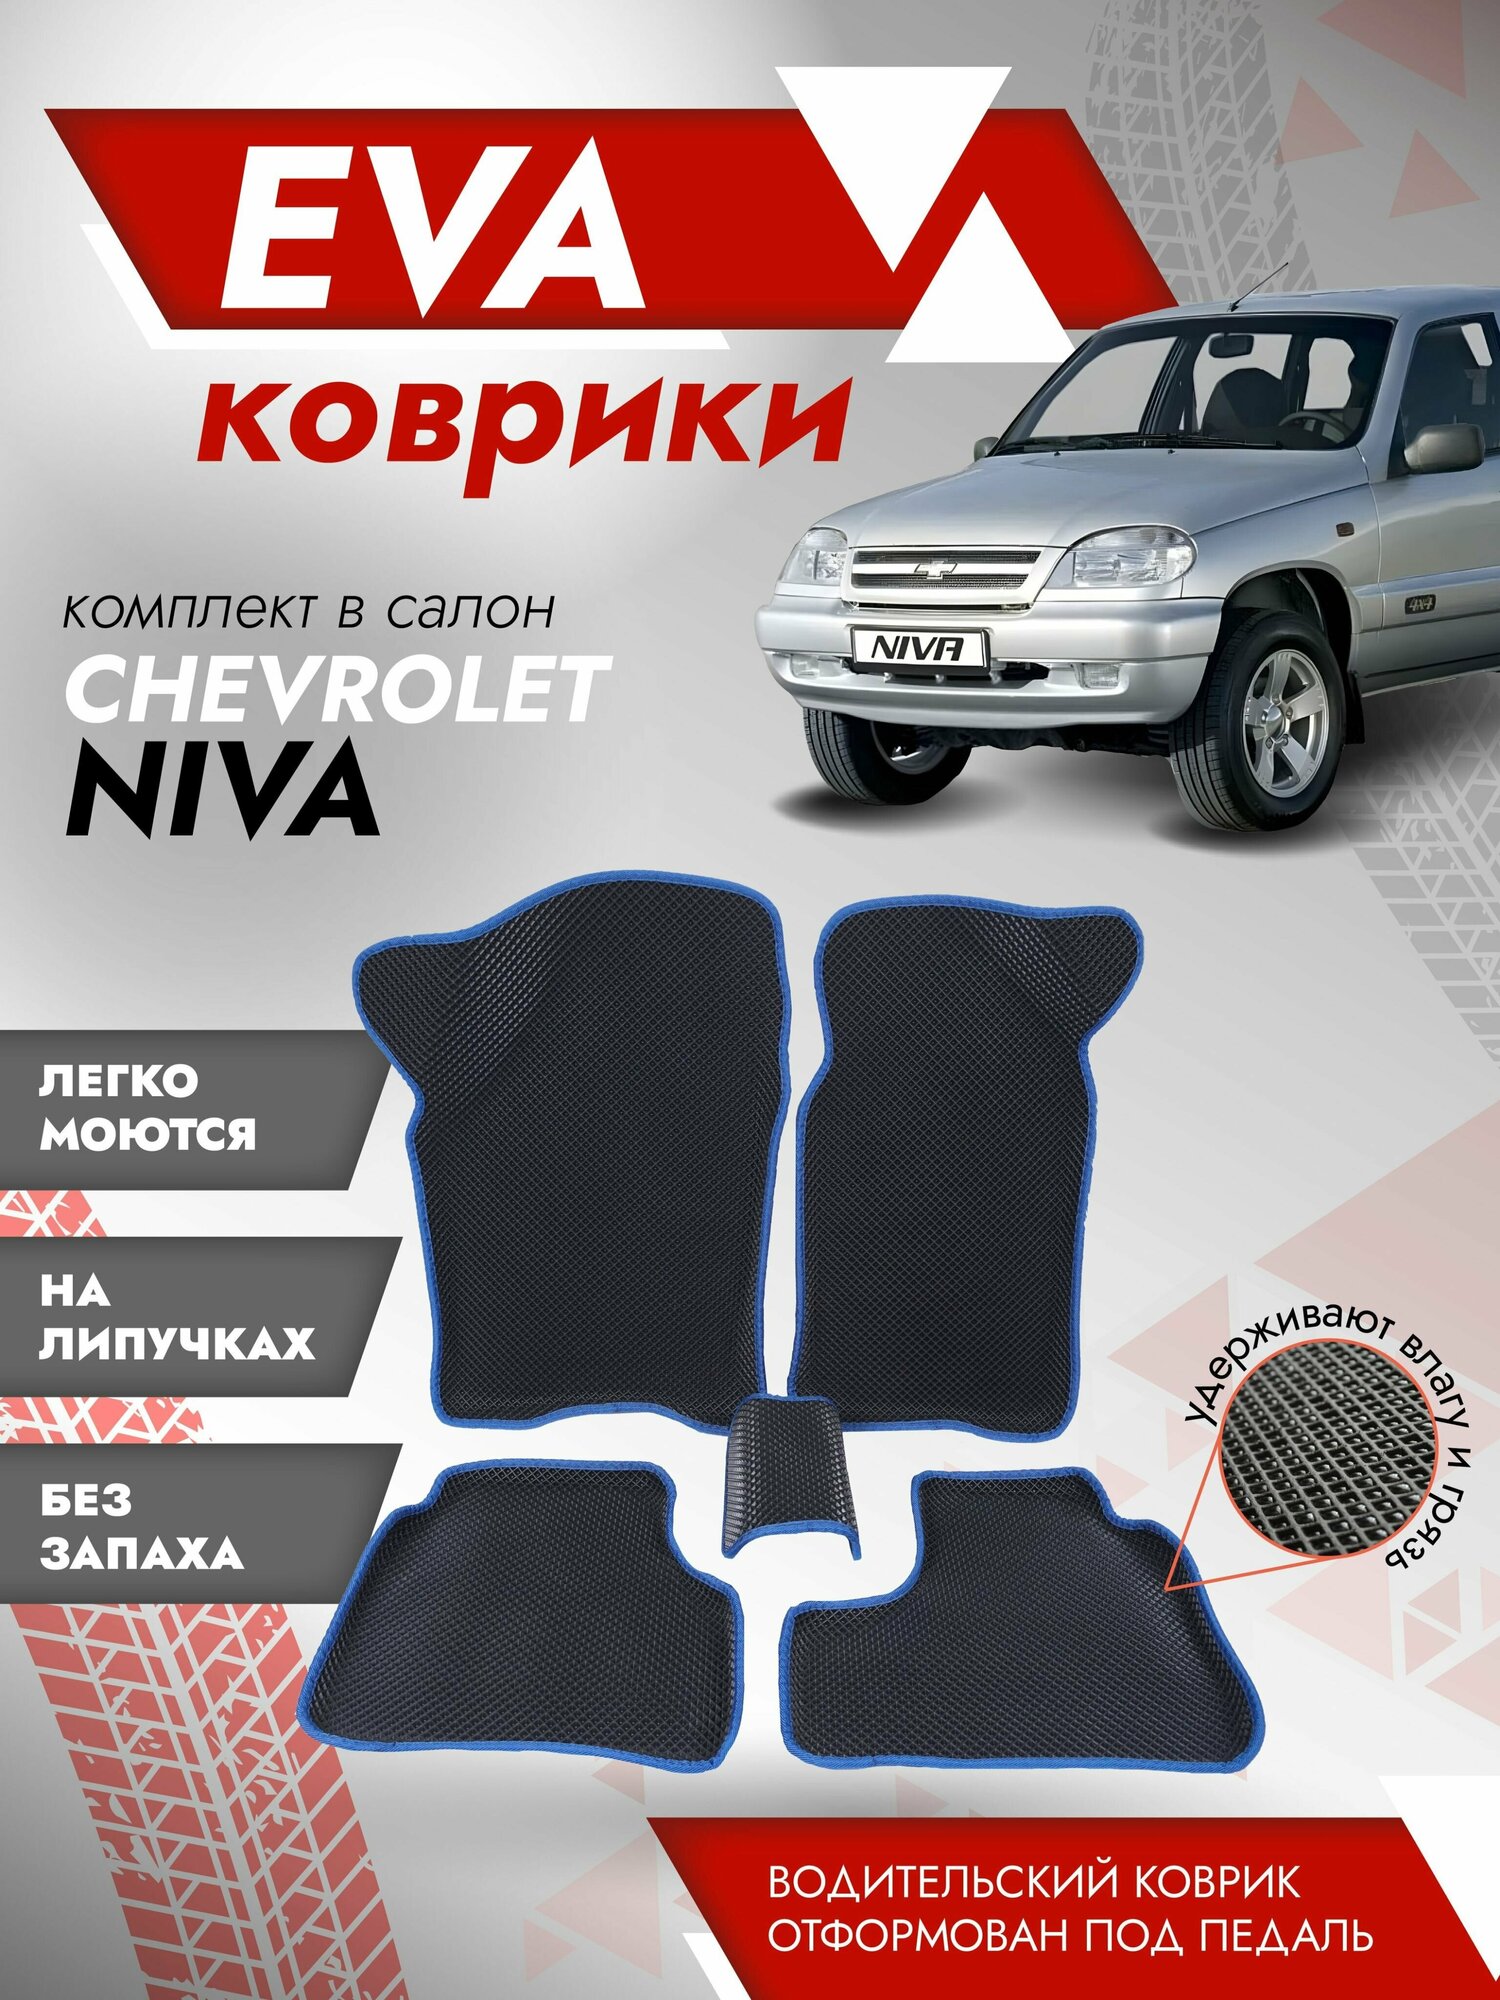 Ева ковры 2123 Нива Шевроле "3Д" (коврики Chevrolet Niva "3D") / синий кант